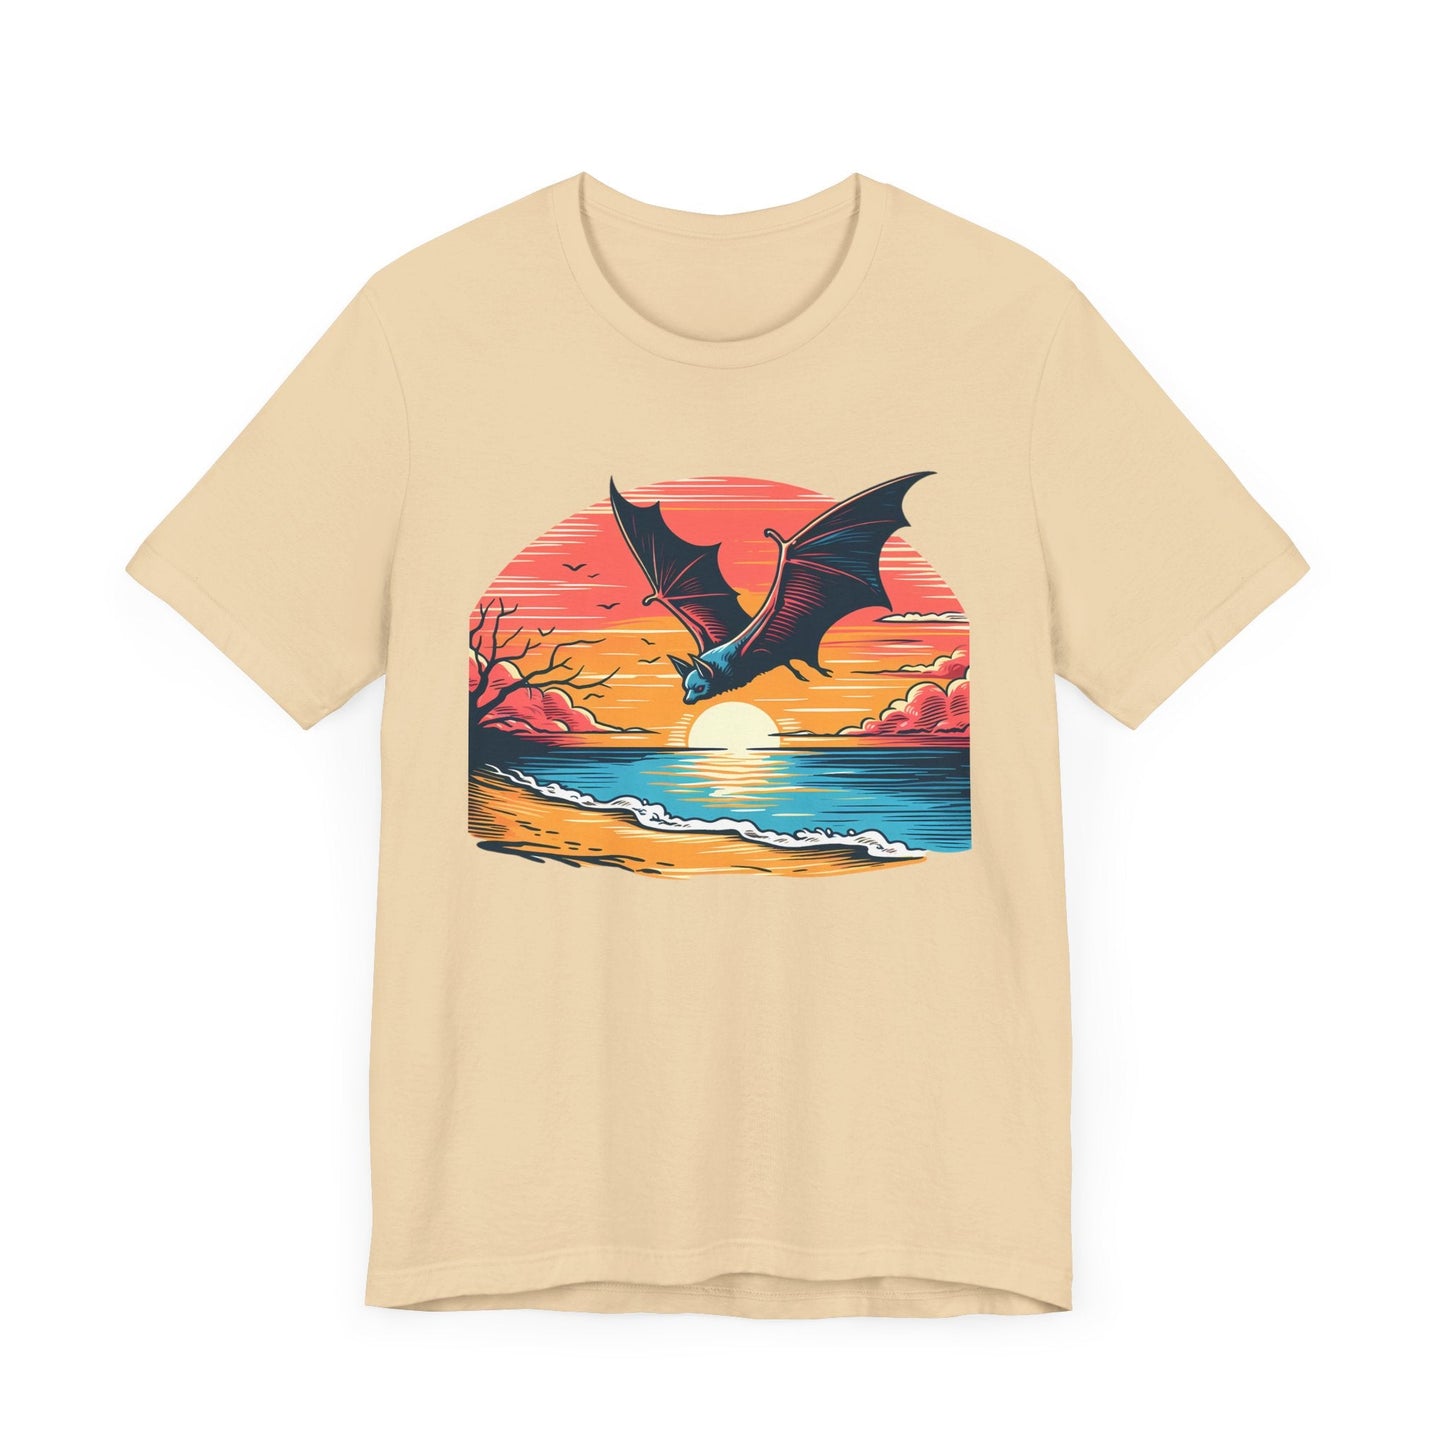 Sunset Bat Short Sleeve Tee ShirtT - ShirtVTZdesignsSoft CreamXSCottonCrew neckDTG